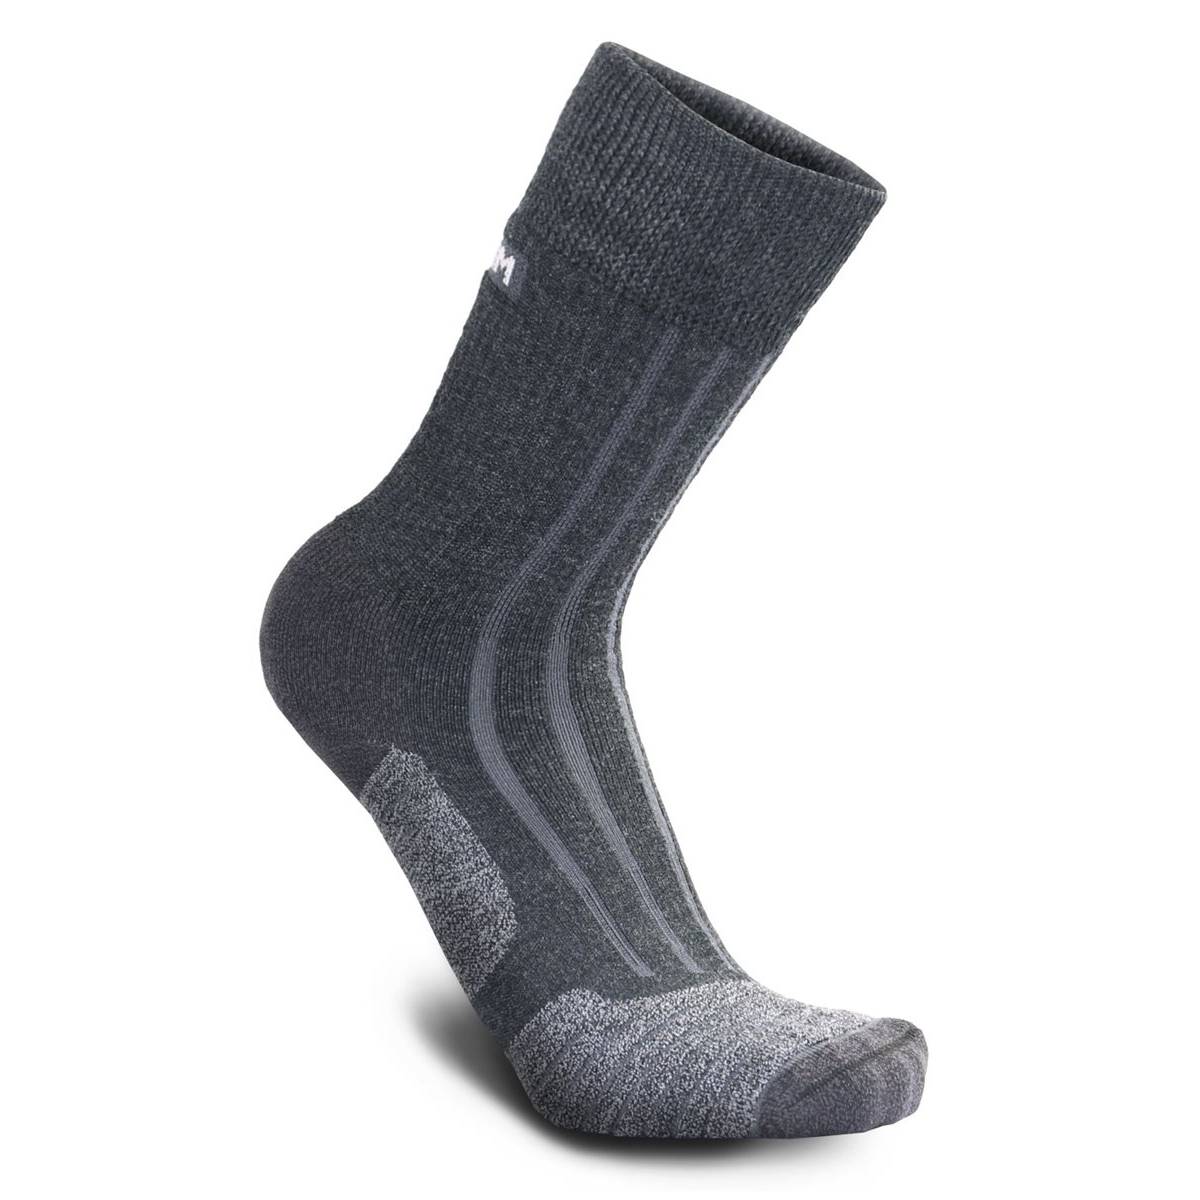 Meindl Mens MT6 Merino Socks (Black/Grey)